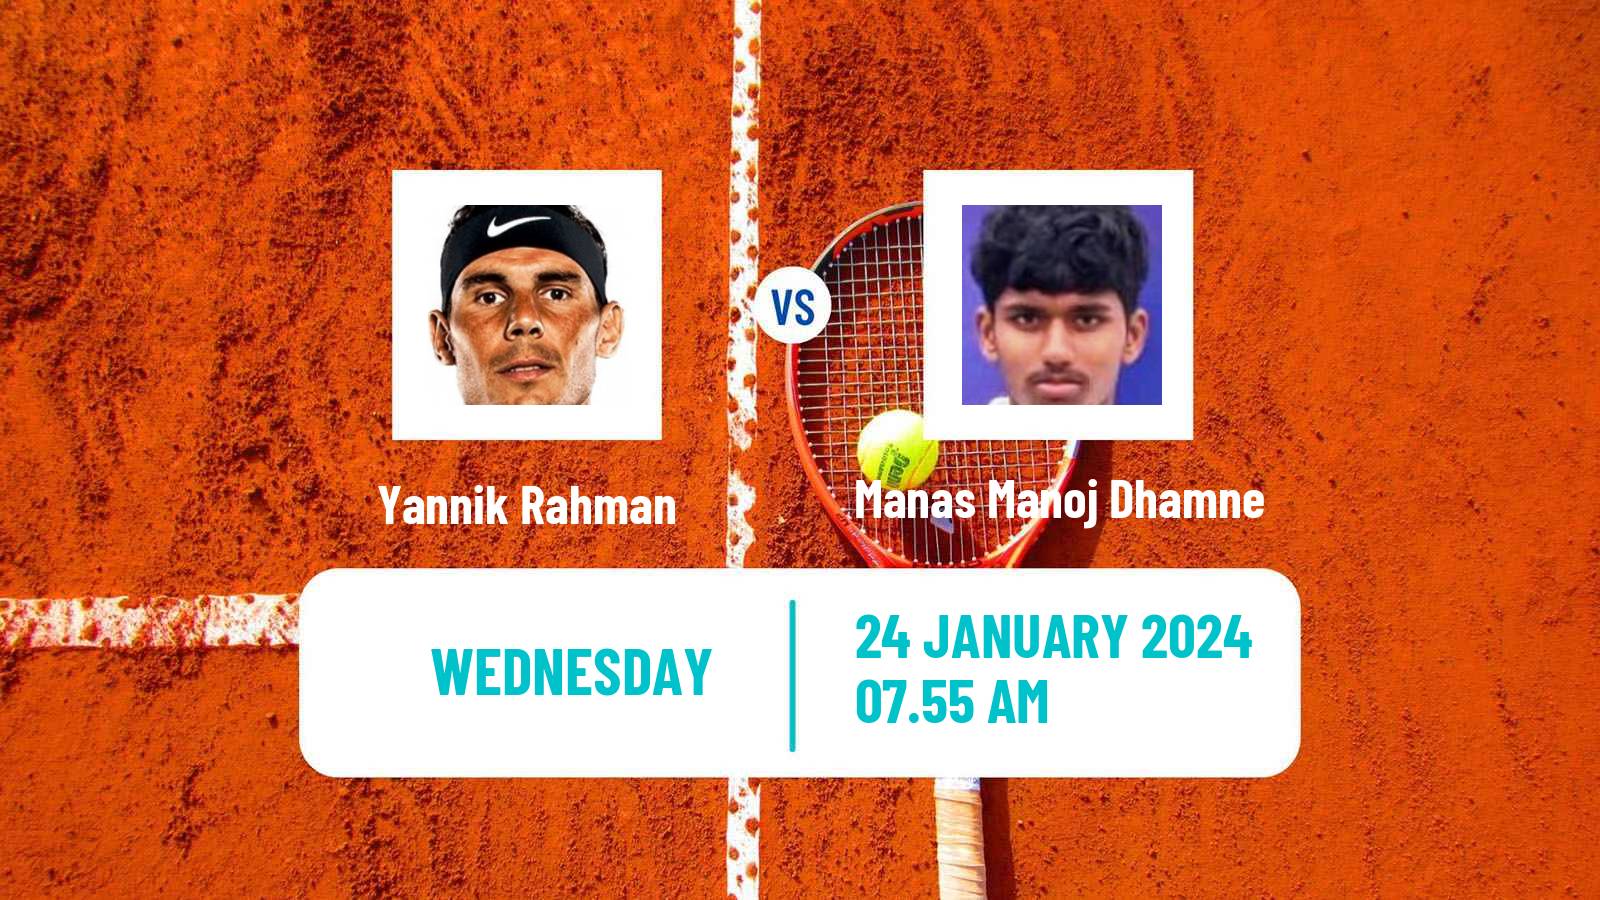 Tennis ITF M15 Manacor 3 Men Yannik Rahman - Manas Manoj Dhamne